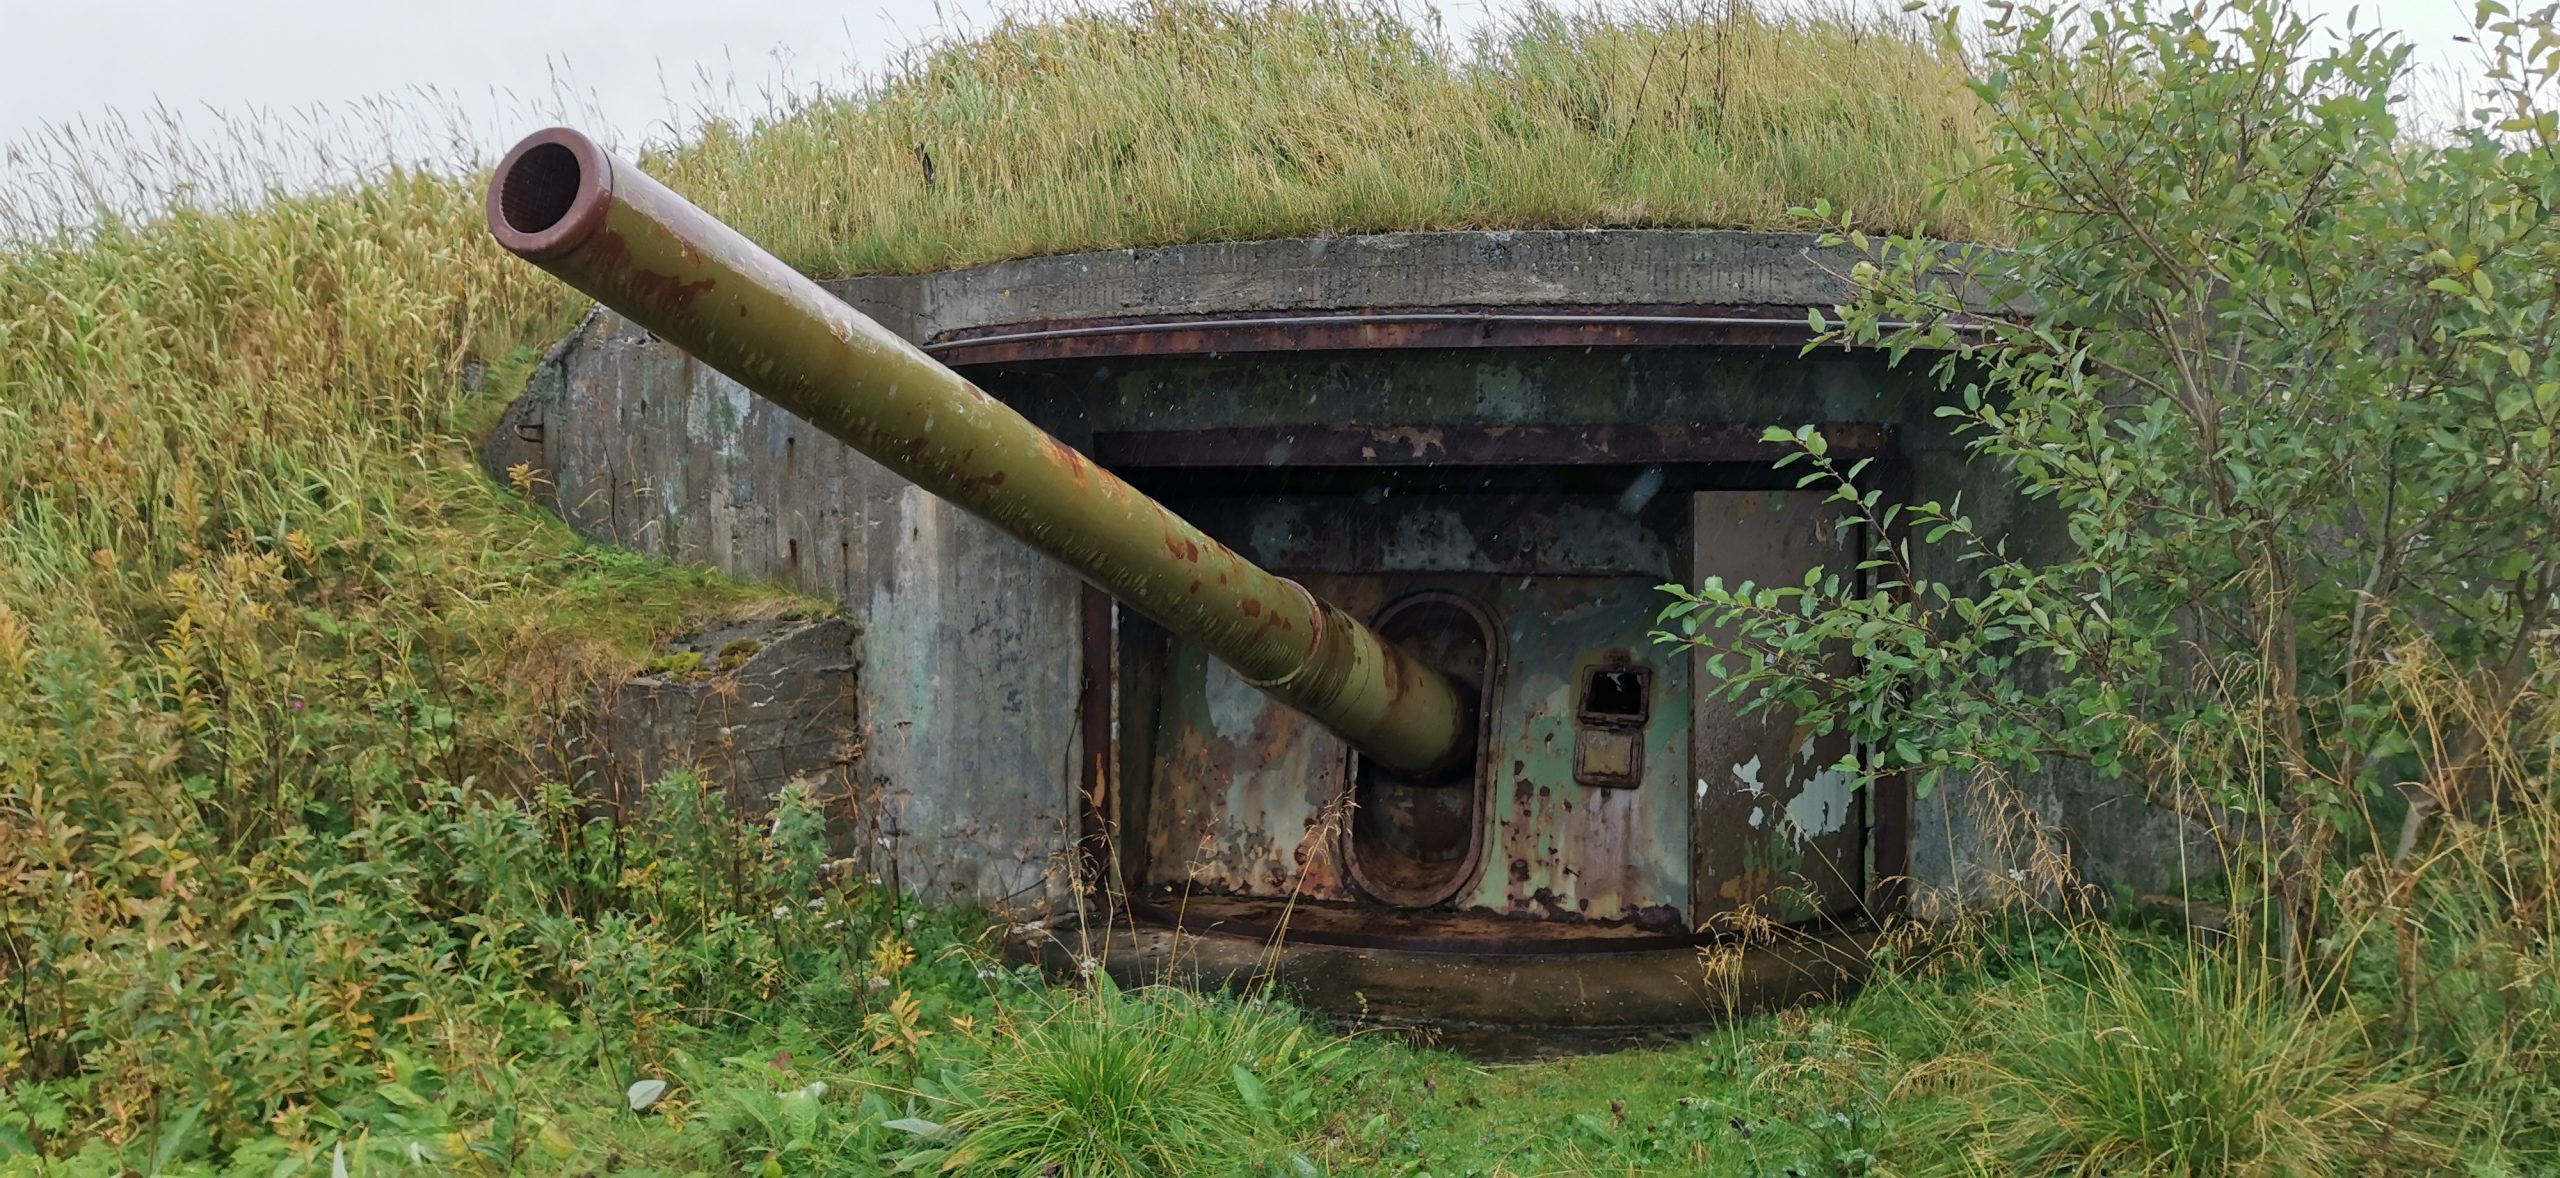 Kann man spannend finden - oder gruselig: Die Bunkeranlagen auf Senja.